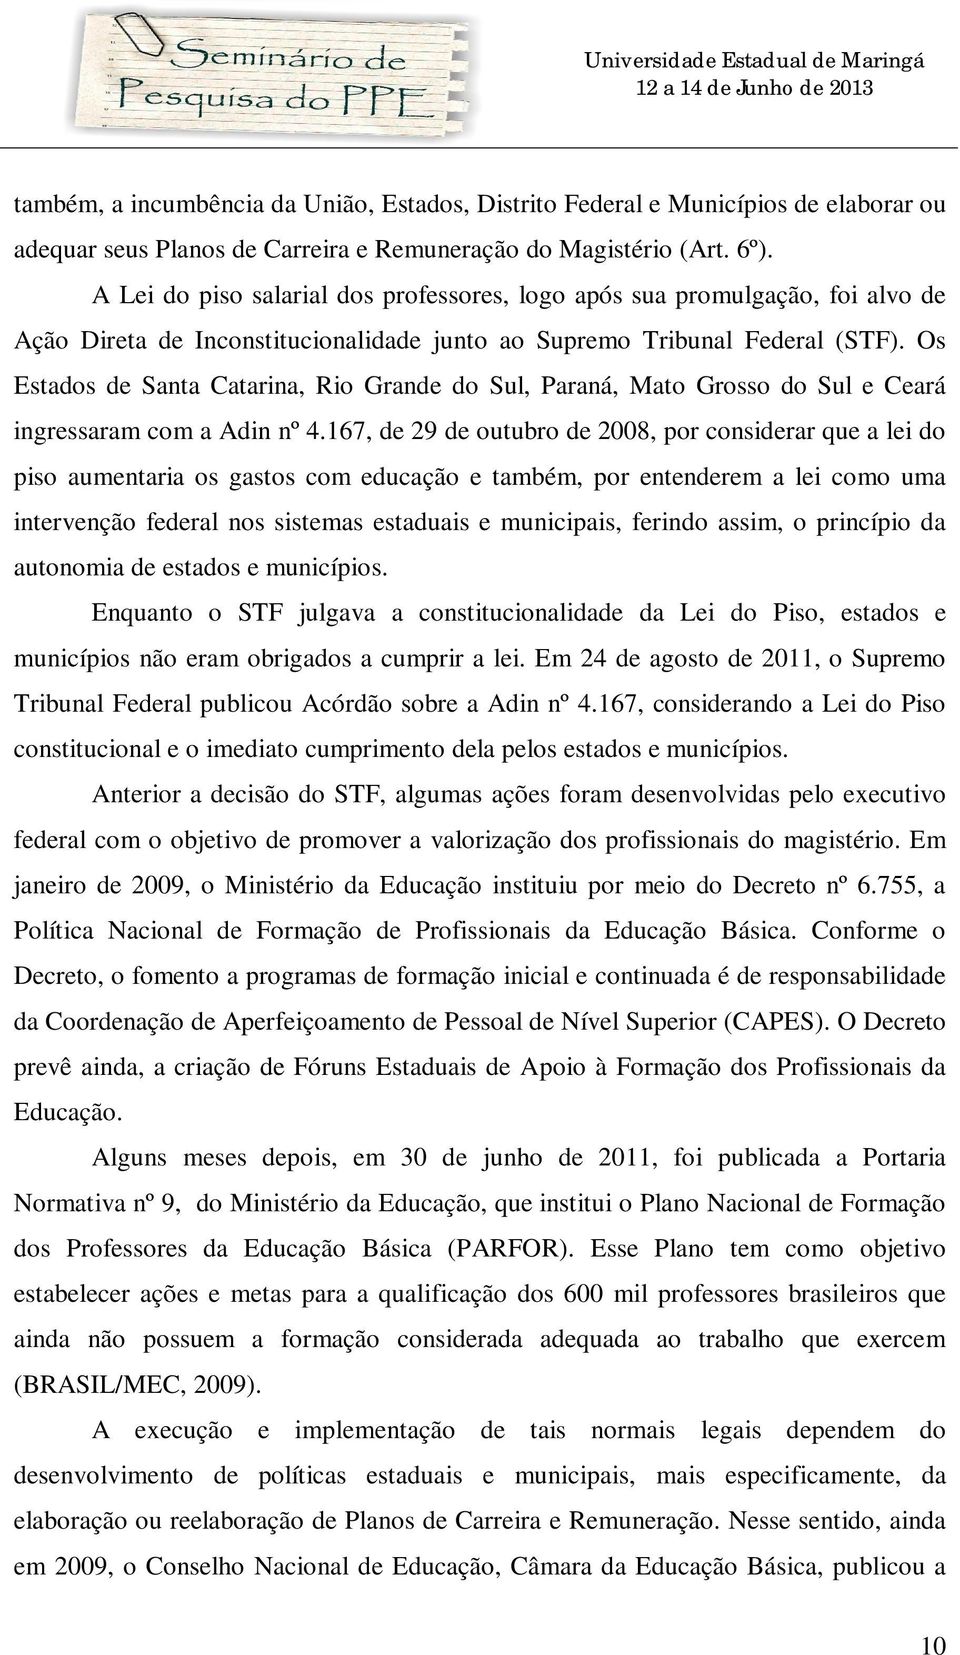 Os Estados de Santa Catarina, Rio Grande do Sul, Paraná, Mato Grosso do Sul e Ceará ingressaram com a Adin nº 4.